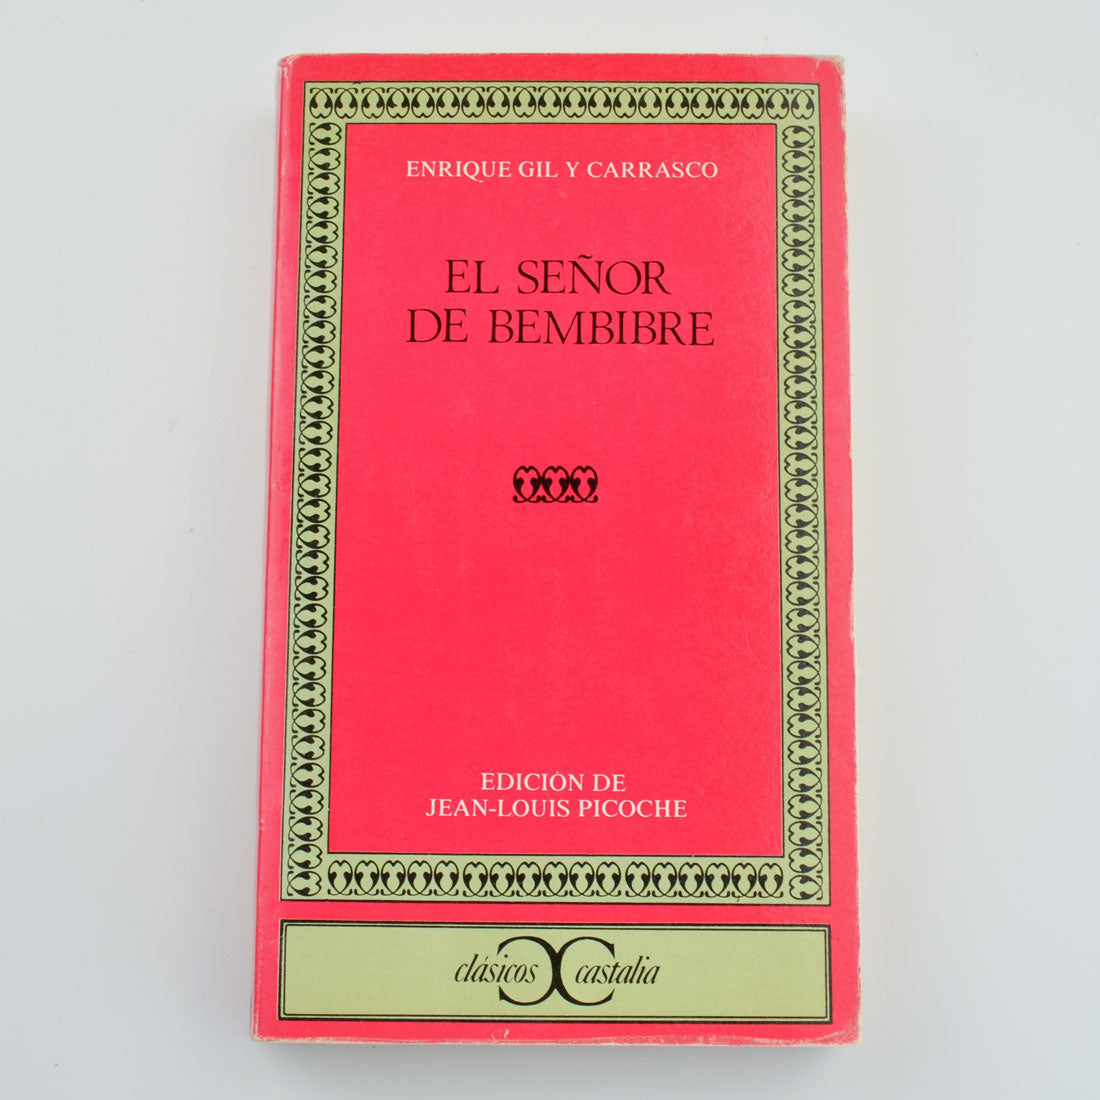 El Senor De Bembibre by Enrique Gil Y Carrasco - 1986 - Spanish